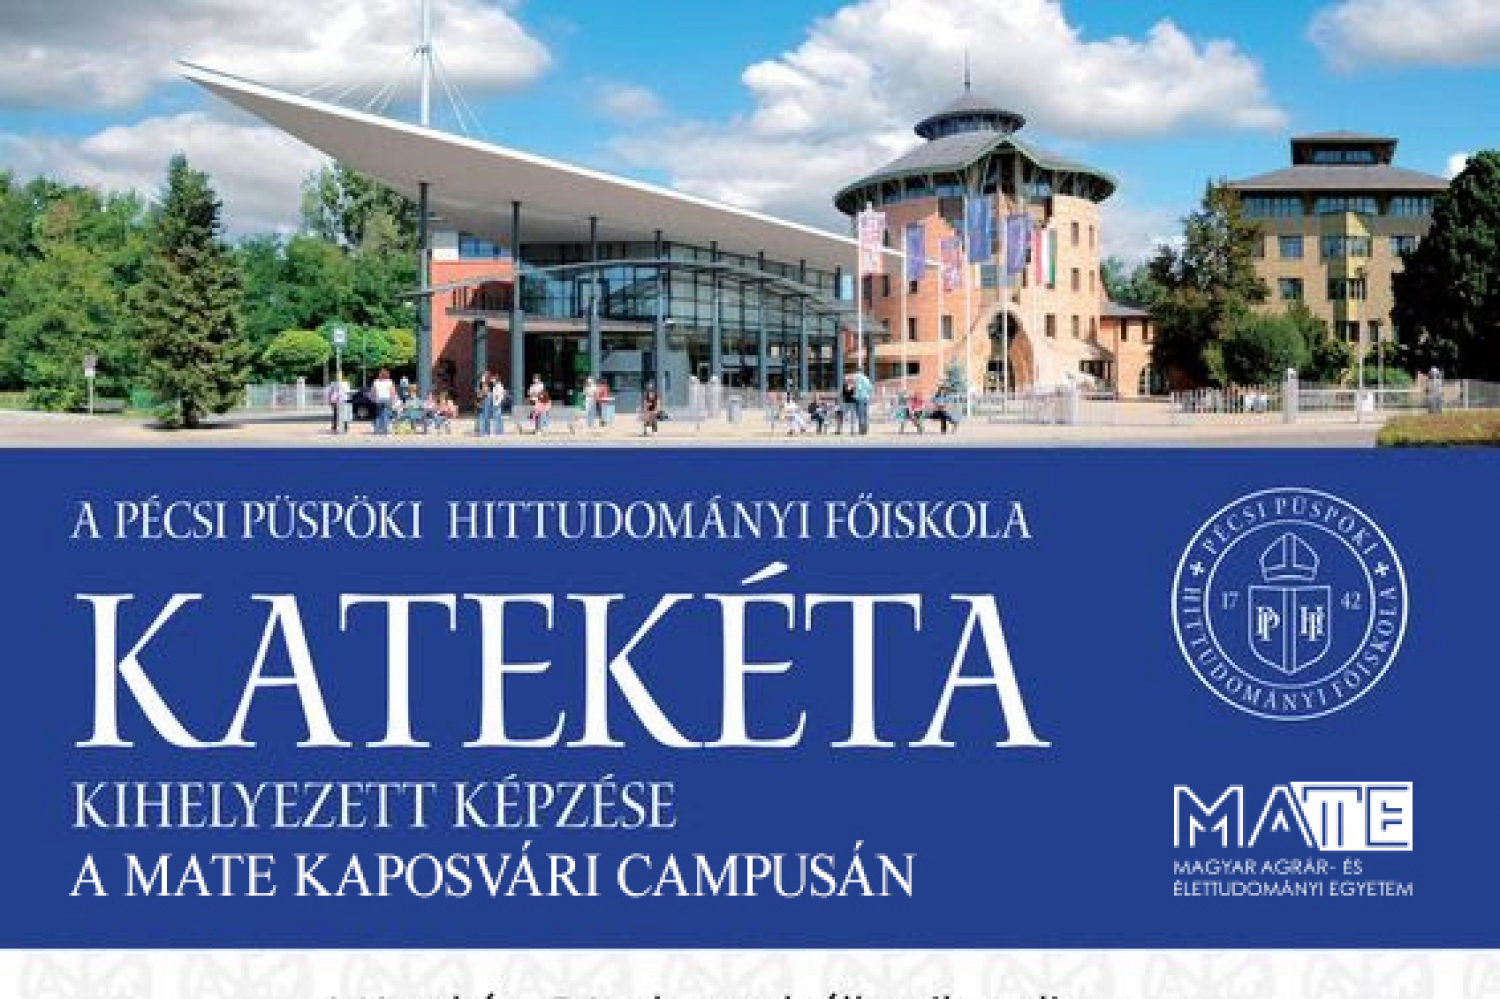 Katekéta Képzés Indul a MATE Kaposvári Campusán